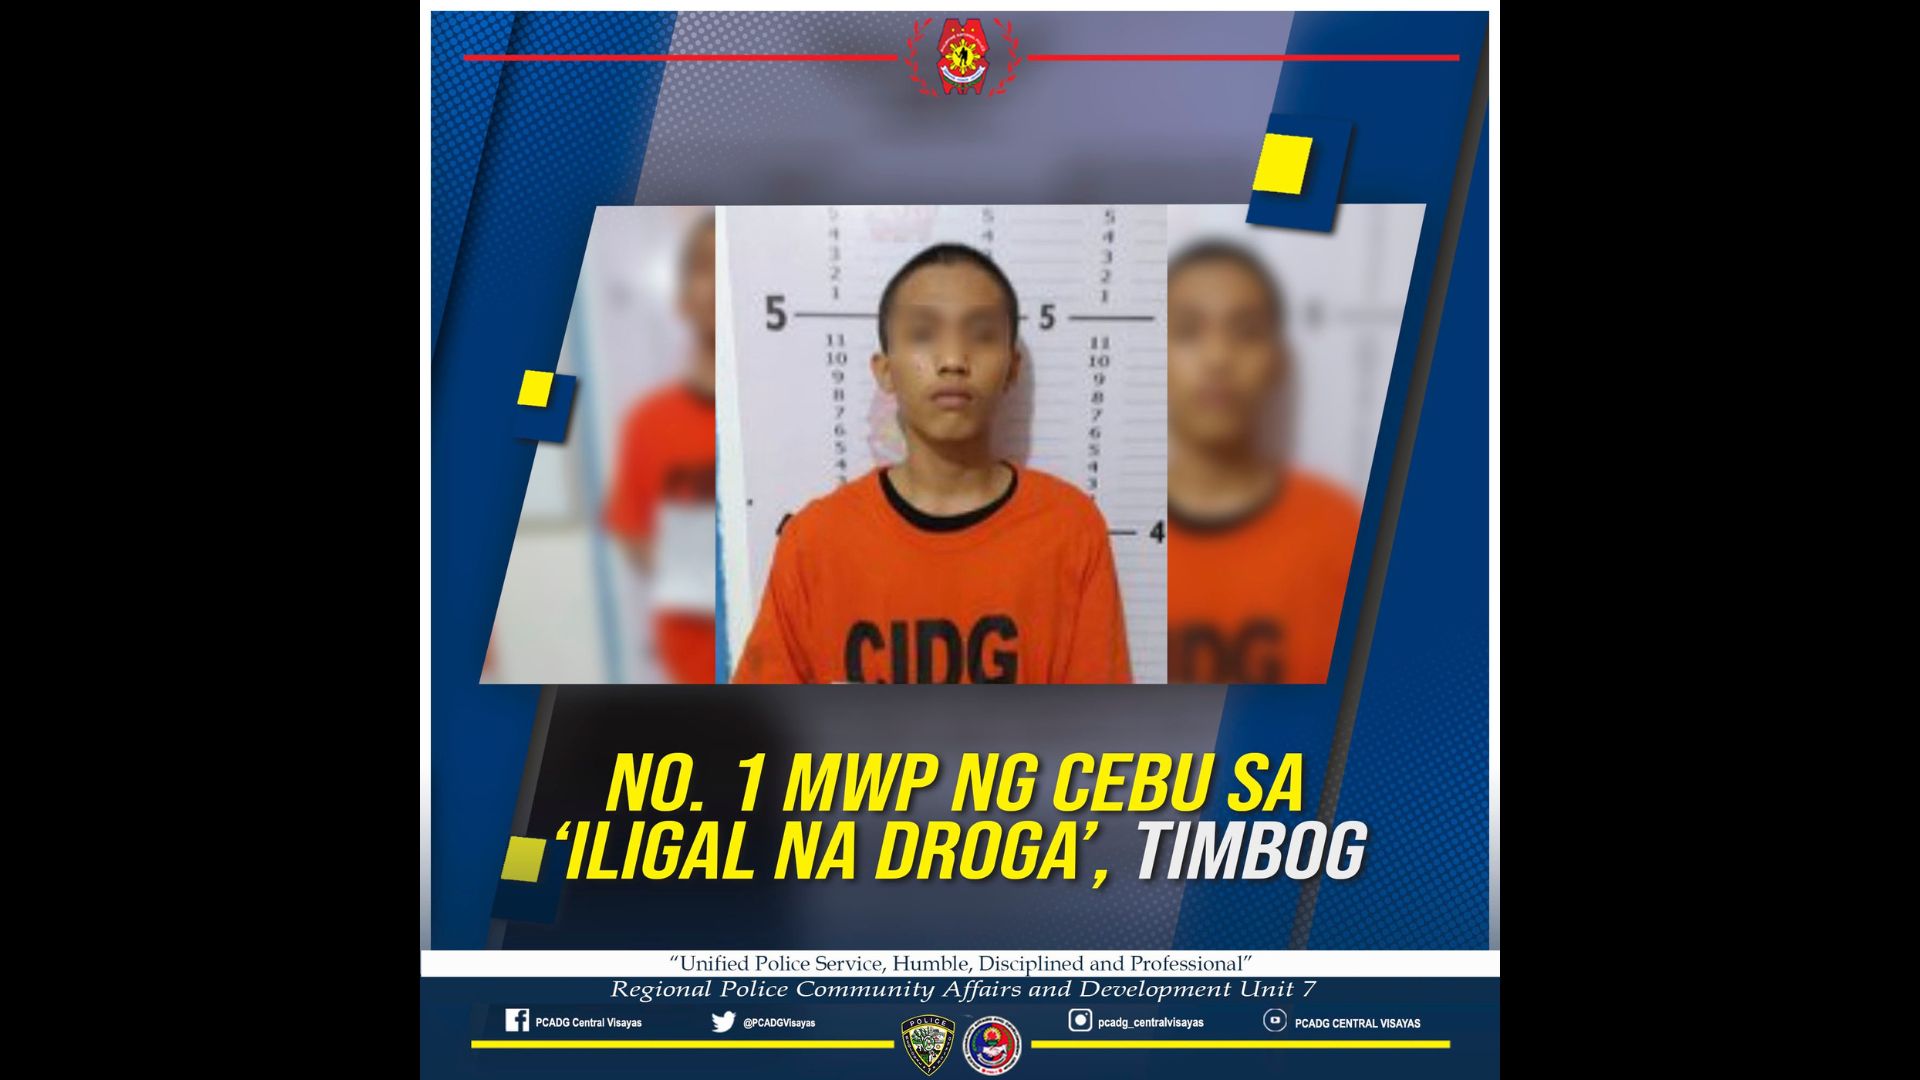 No. 1 Most Wanted sa Cebu sa kasong illegal drugs naaresto